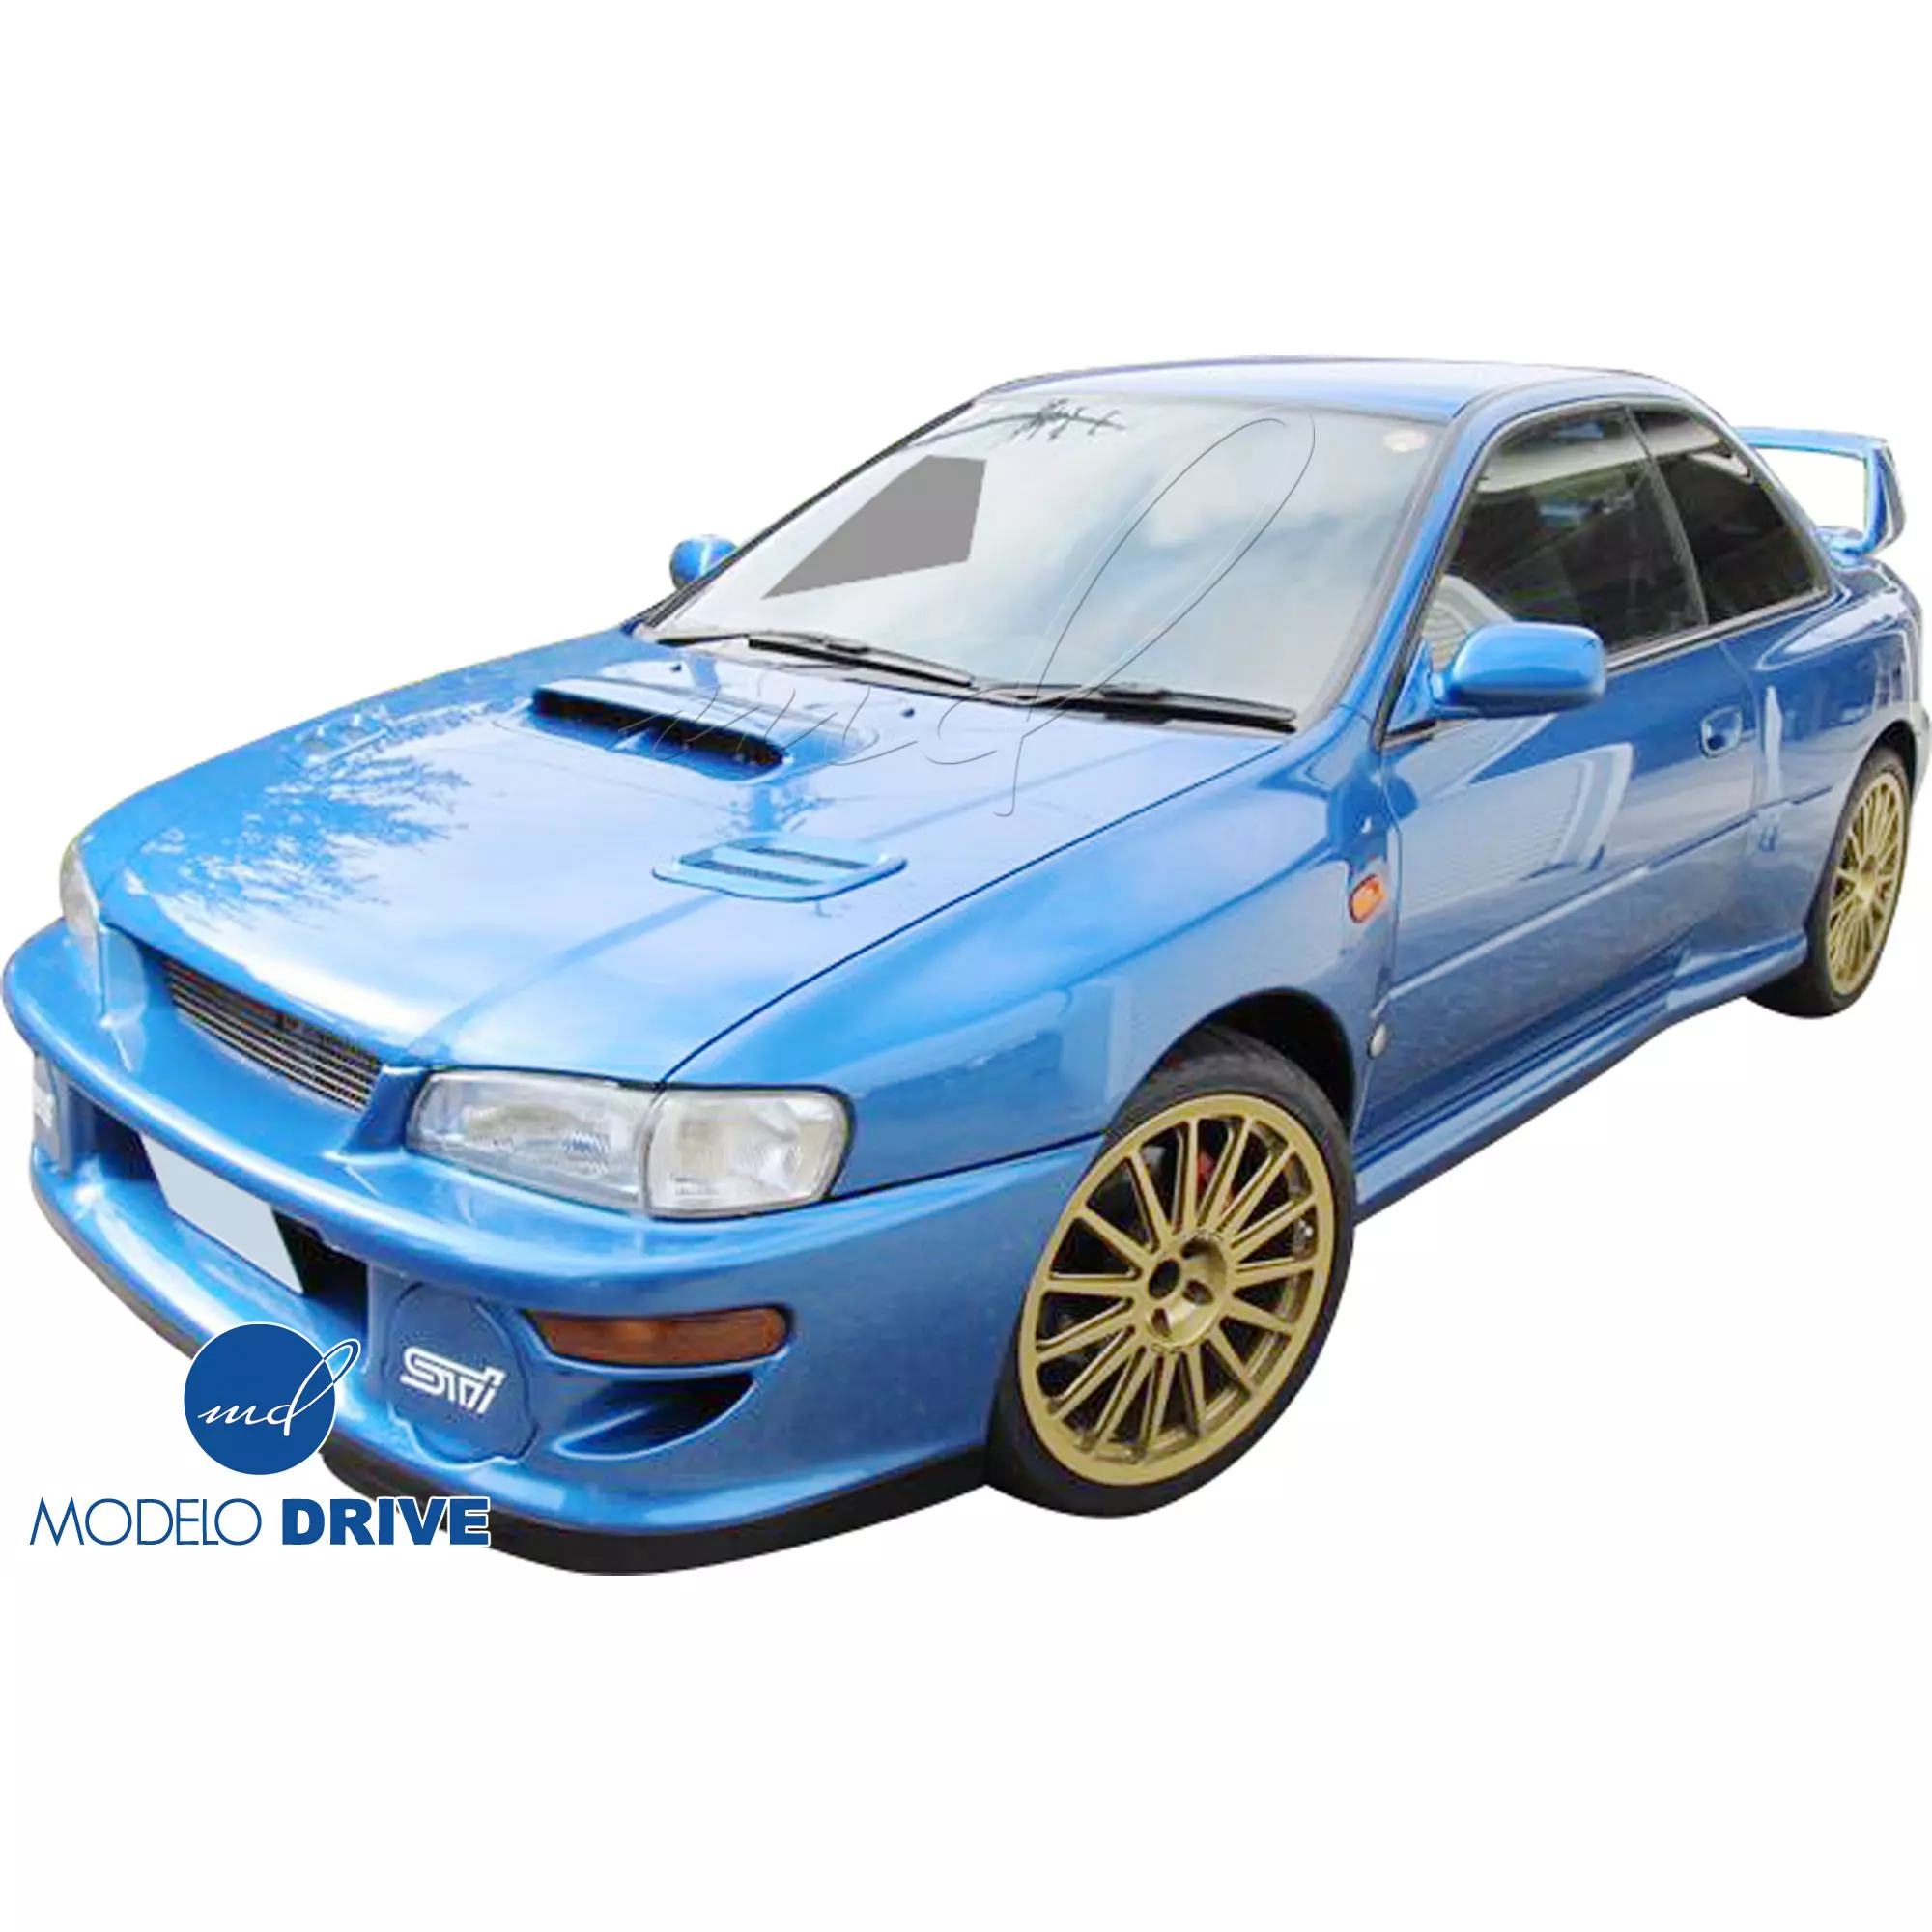 ModeloDrive FRP LS WRC 00 Front Bumper w Caps 3pc > Subaru Impreza (GC8) 1993-2001 > 2/4dr - Image 18